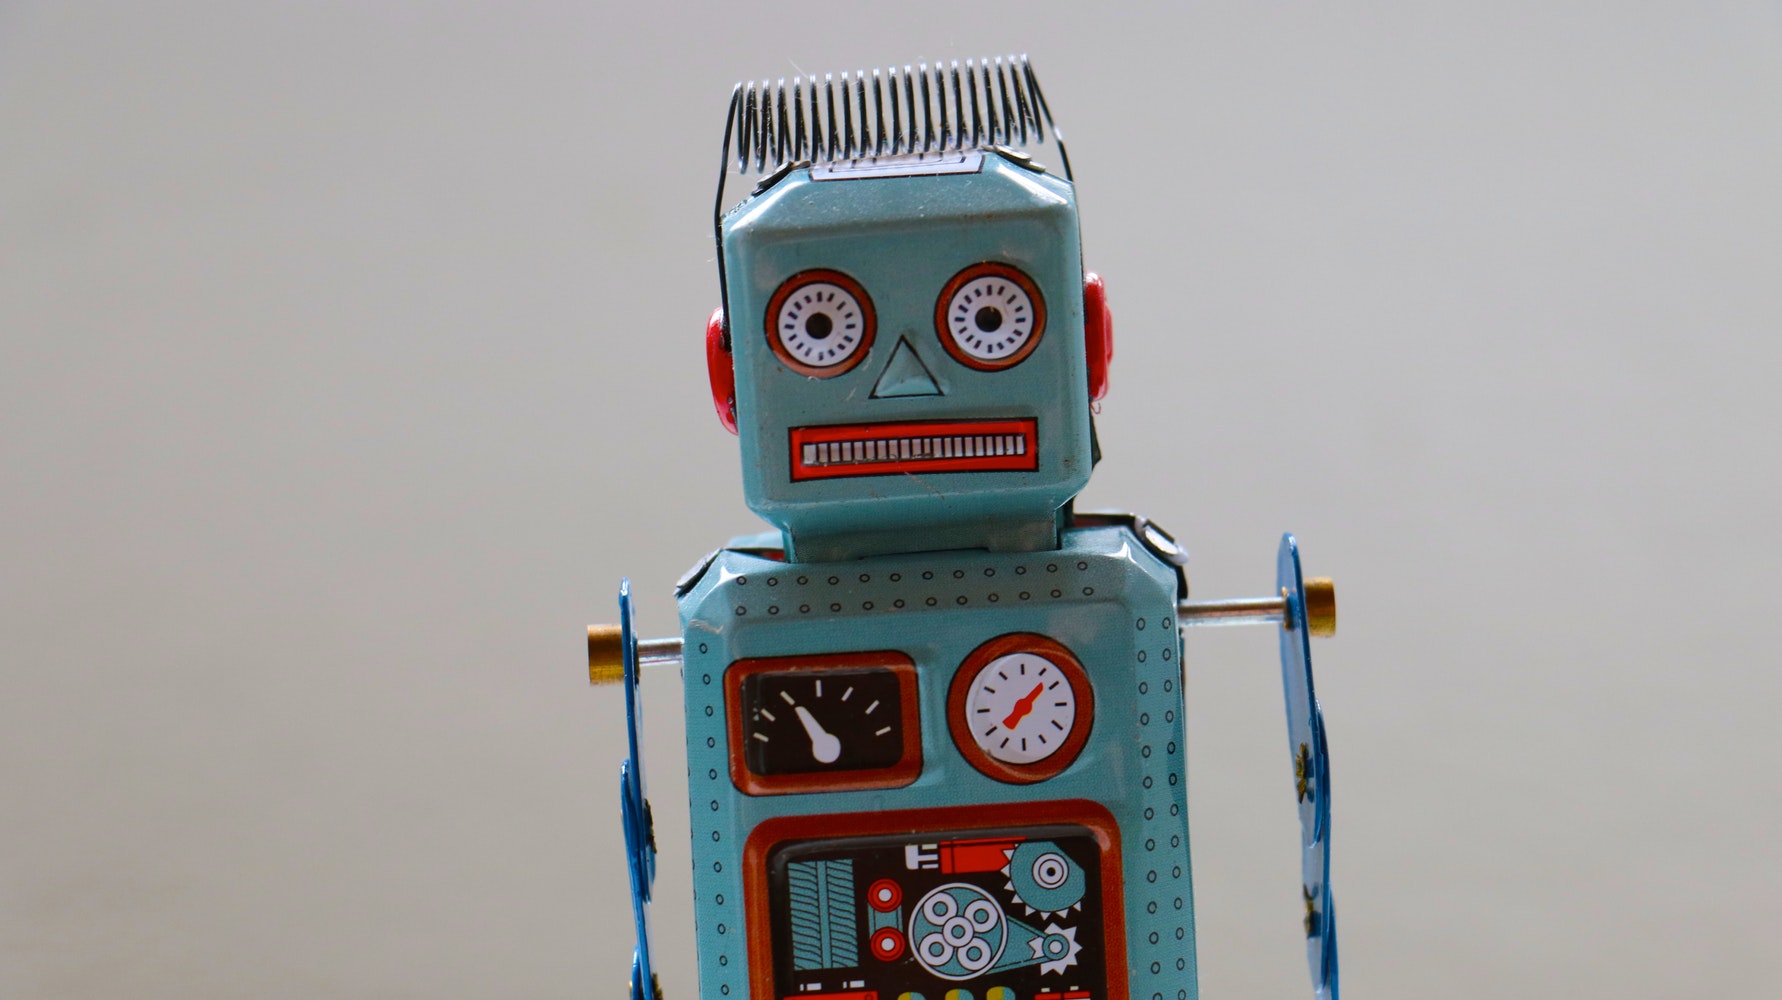 古腾堡贡献者考虑实施一个机器人以解决过时的问题古腾堡贡献者考虑实现一个机器人来解决过时的问题